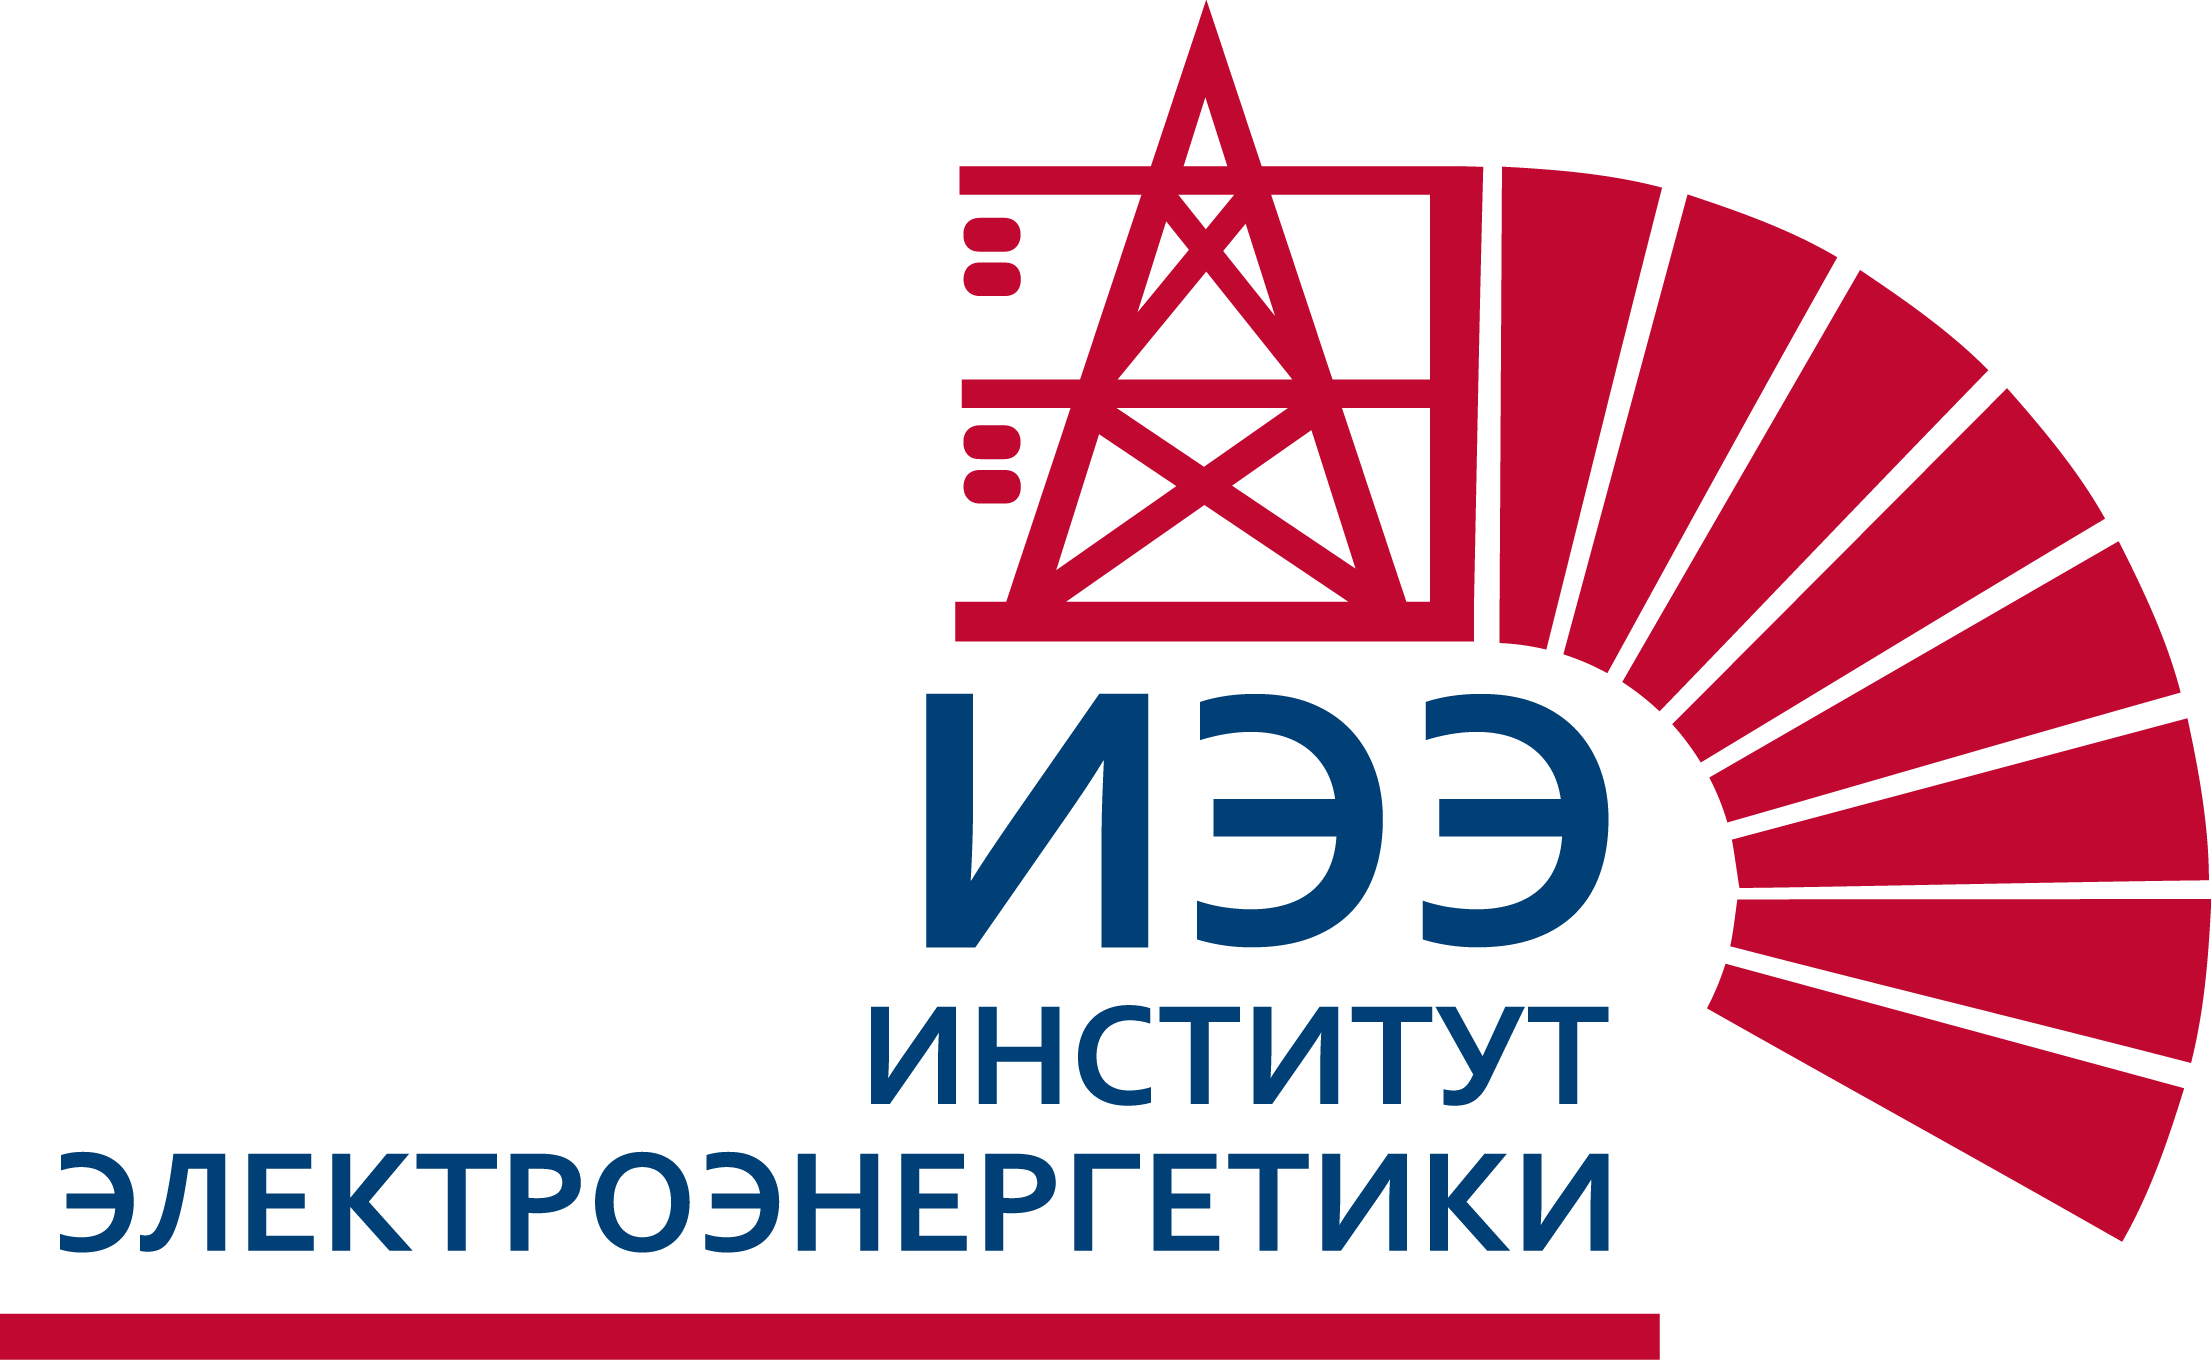 Сайт московского энергетического института. Институт электроэнергетики МЭИ. Логотип ИЭЭ МЭИ. Национального исследовательского университета "МЭИ" logo. МЭИ Факультет ИЭЭ.